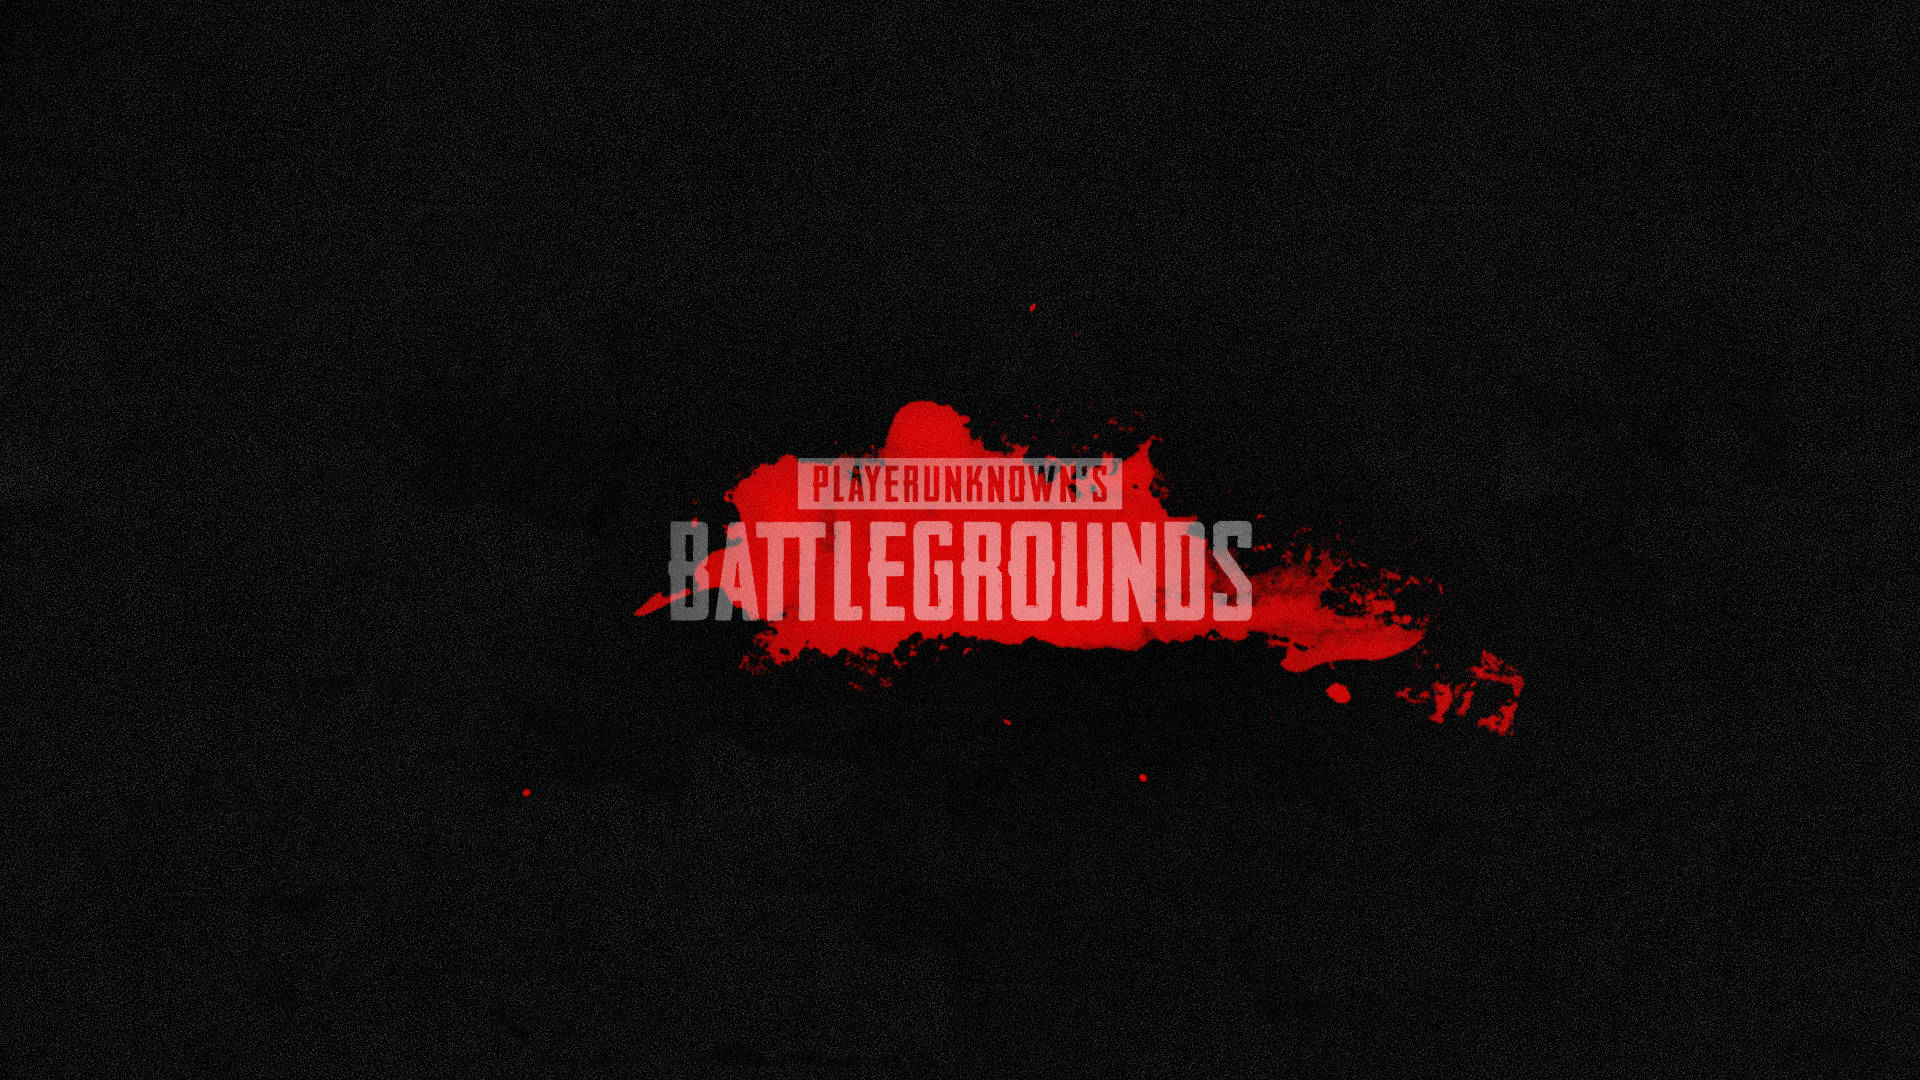 Logodo Playerunknown's Battlegrounds Em Preto. Papel de Parede